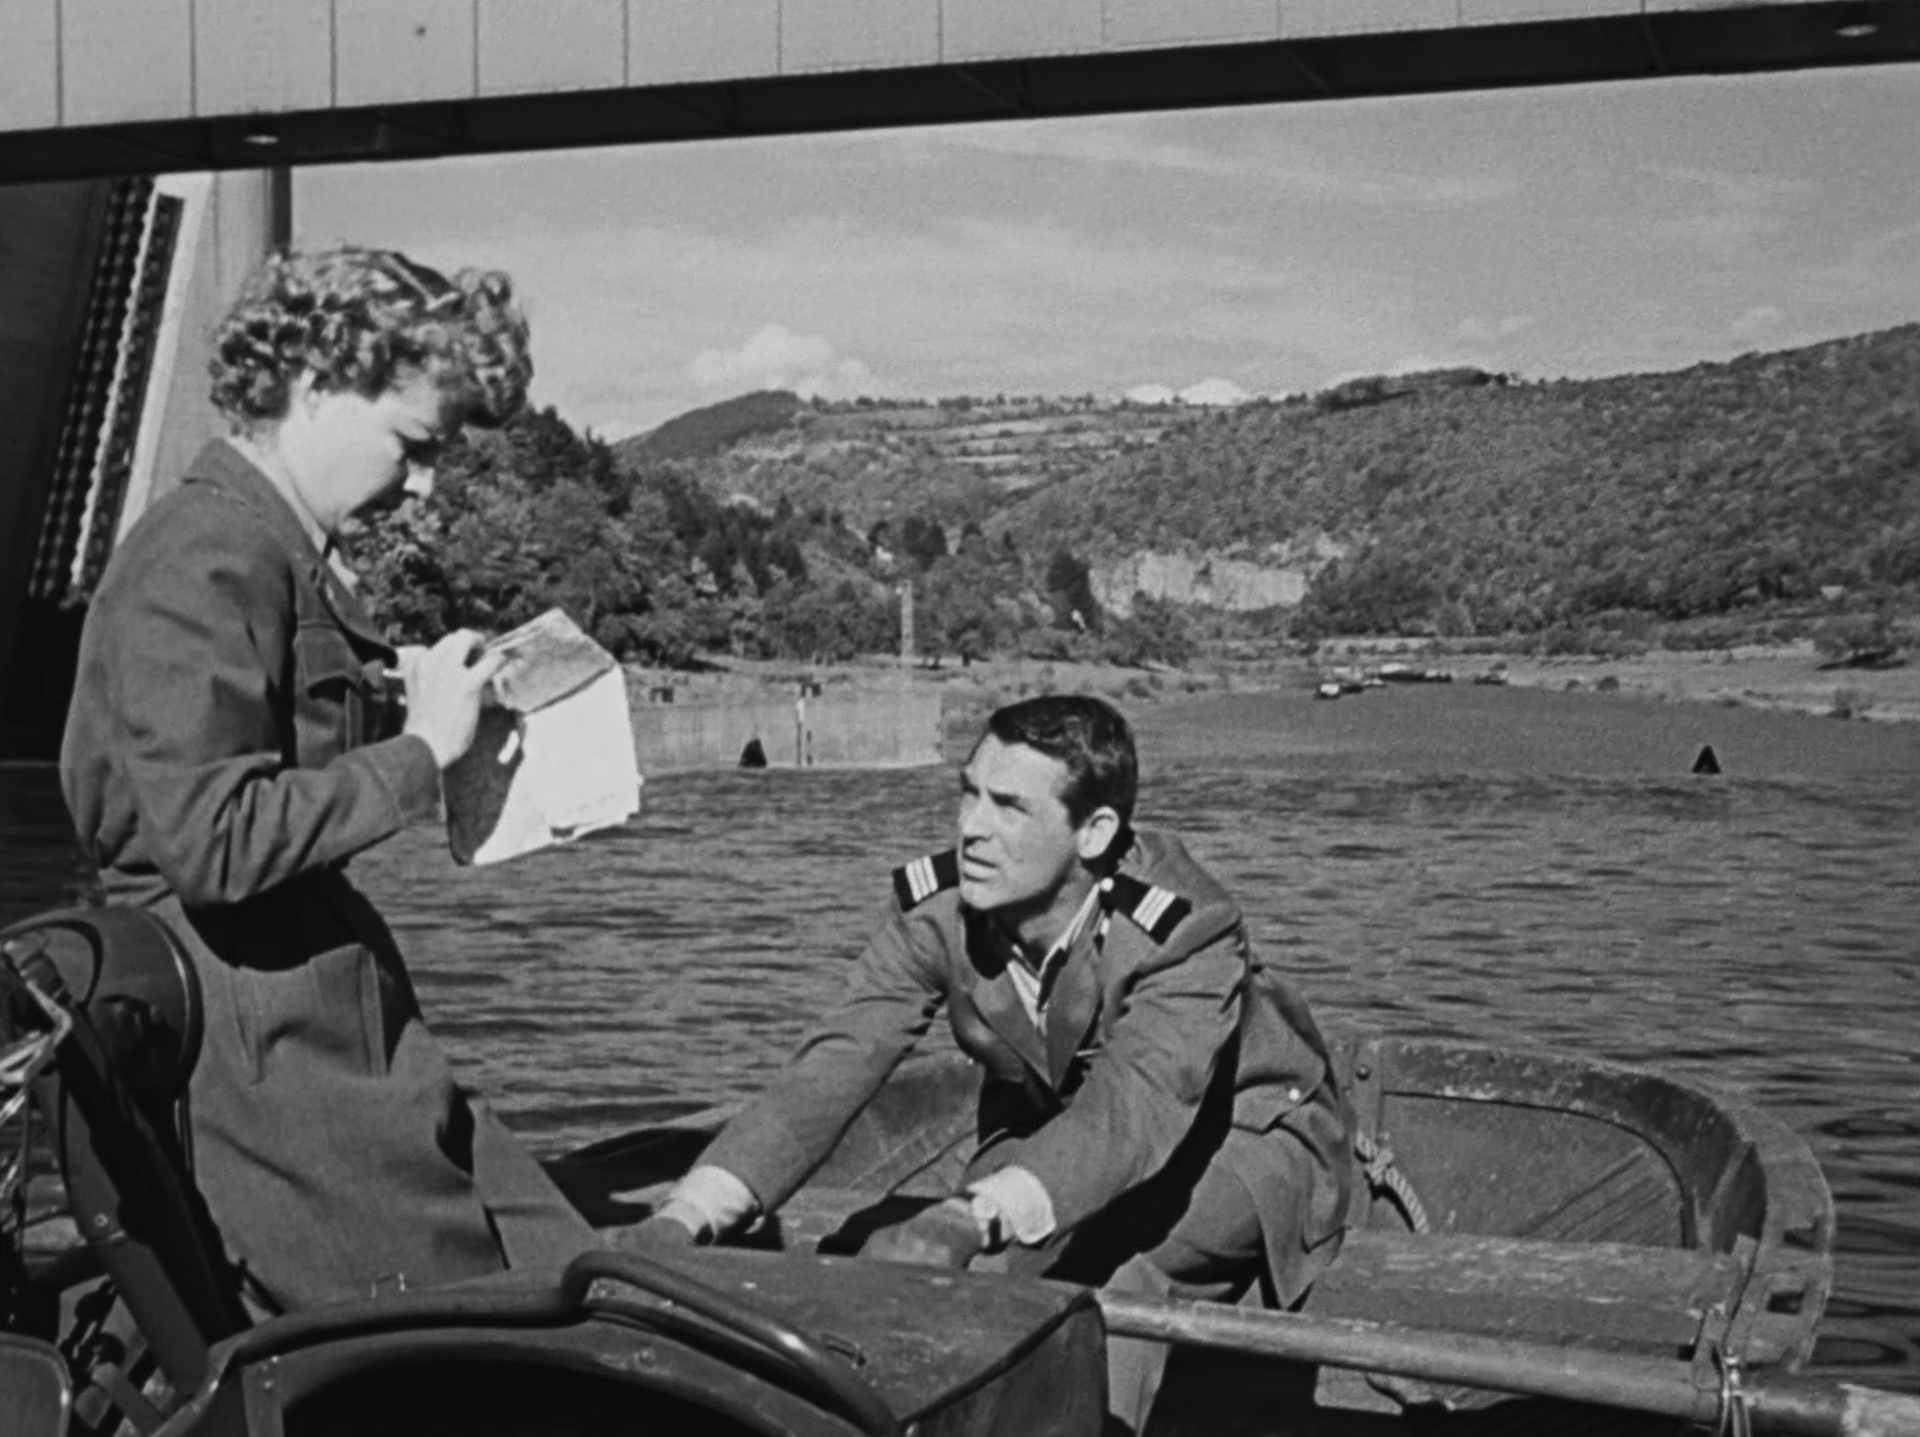 Schwarz-Weiß-Szene: Ann Sheridan und Cary Grant in einem Ruderboot vor der Staustufe Rockenau, kurz vor dem Abgrund, im Hintergrund erstrecken sich die Hänge großer Hügelketten; sie schaut auf eine Faltkarte, er rudert.